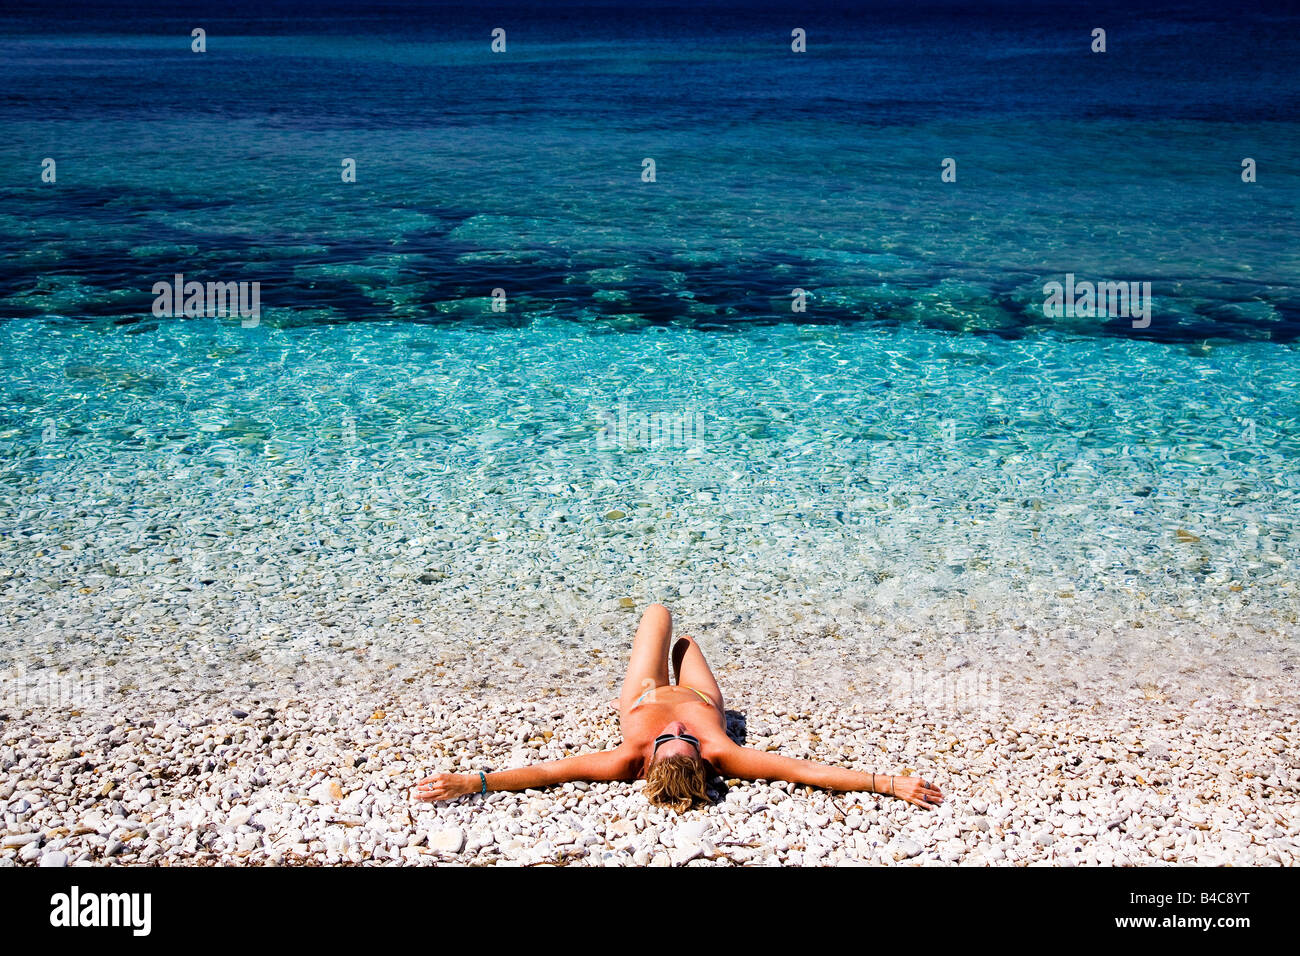 Nude Girl Sun Tanning On Beach